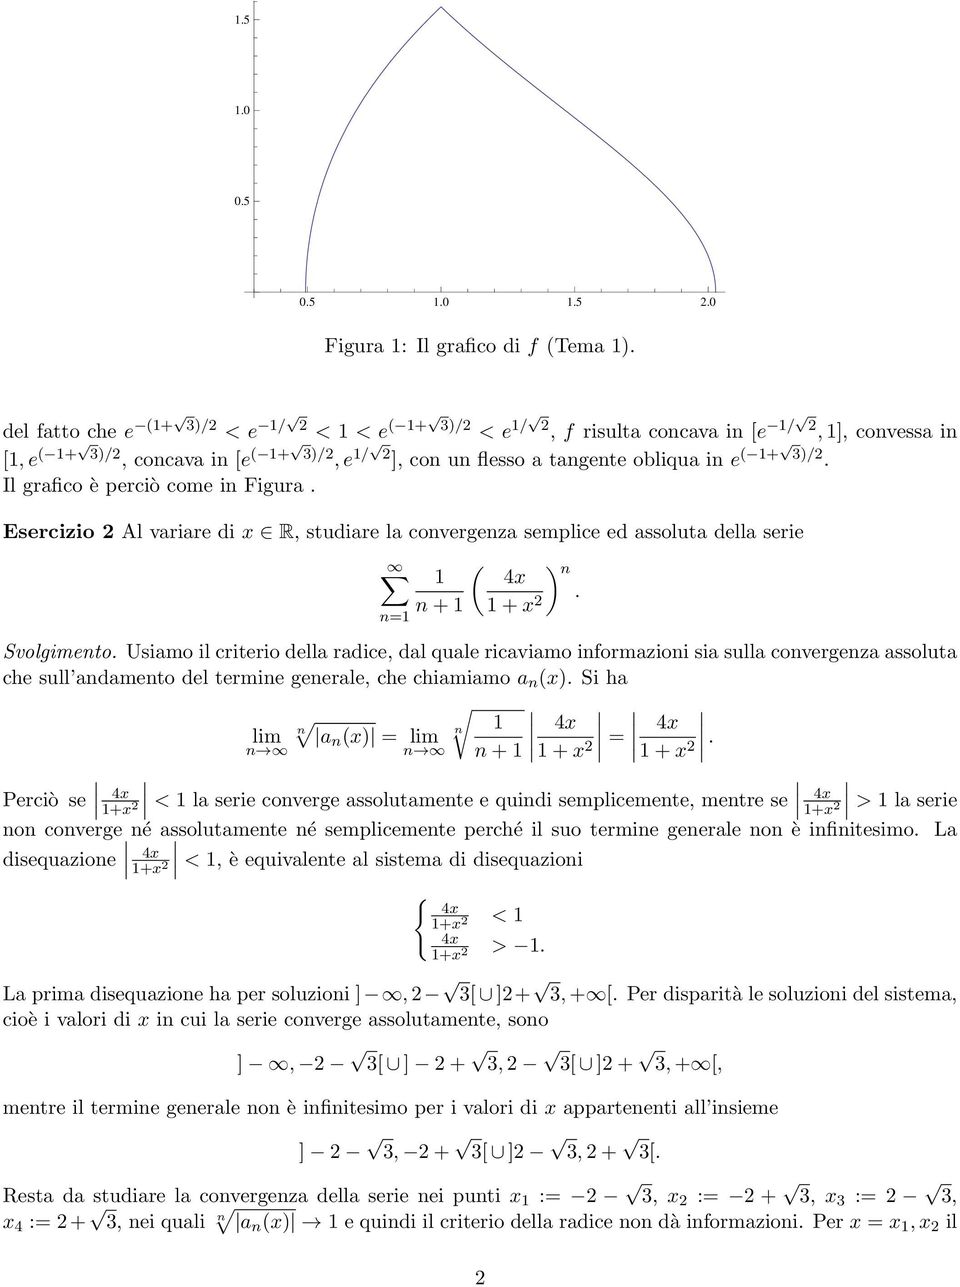 Esercizio Al variare di x R, studiare la covergeza semplice ed assoluta della serie ( 4x + + x. = Svolgimeto.